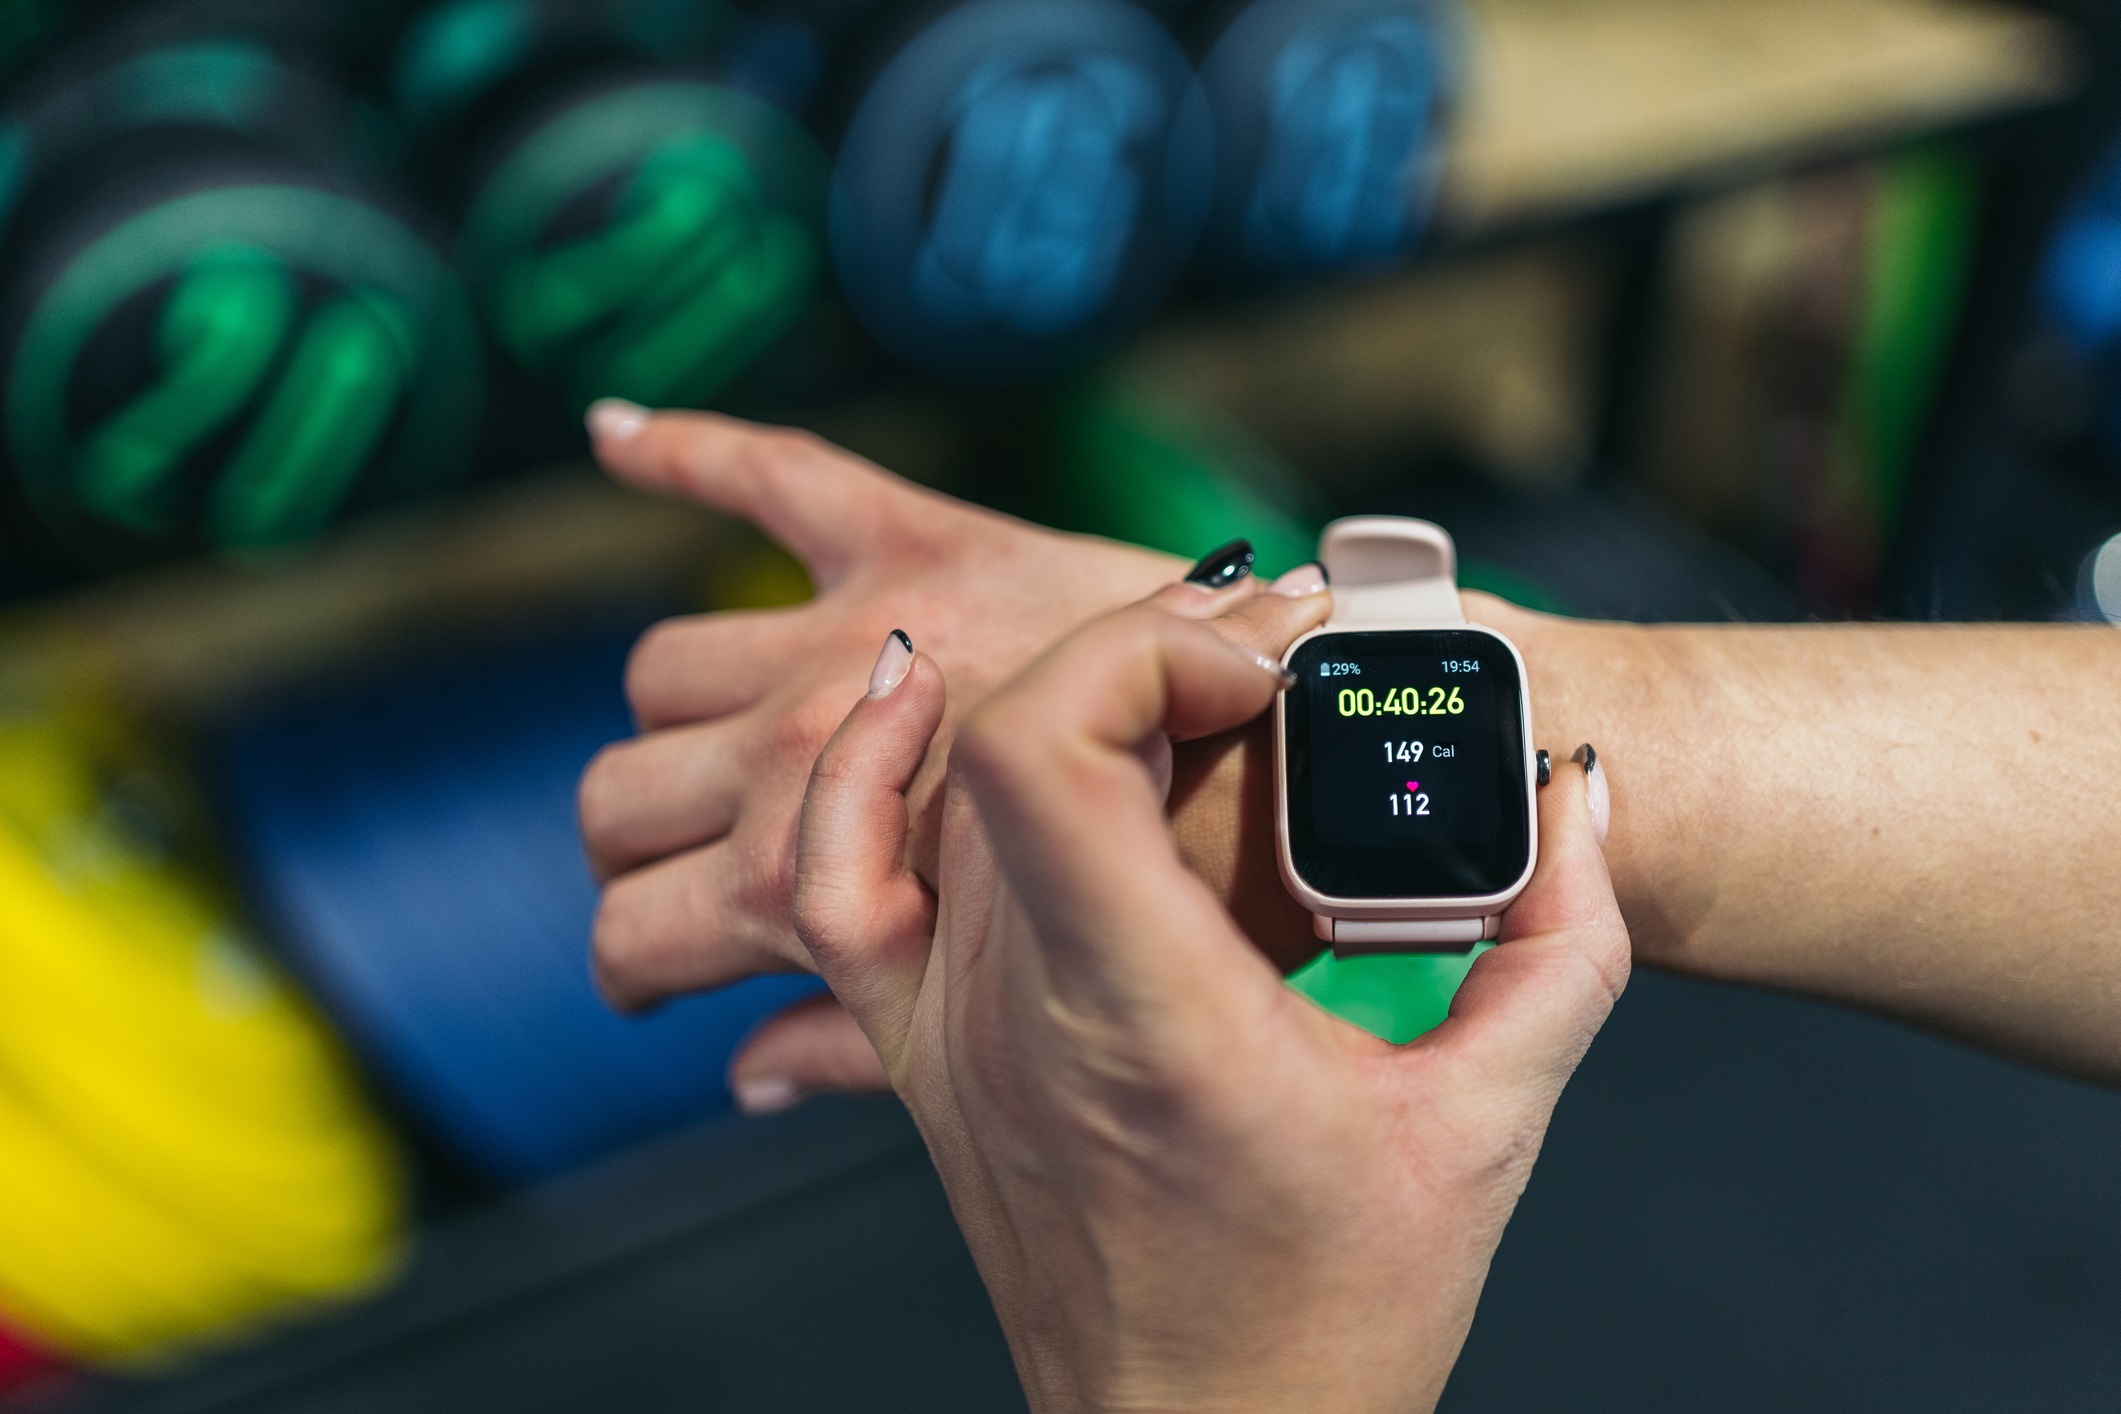 TotalPass, app de saúde, ganha check-in em academias via Apple Watch; confira